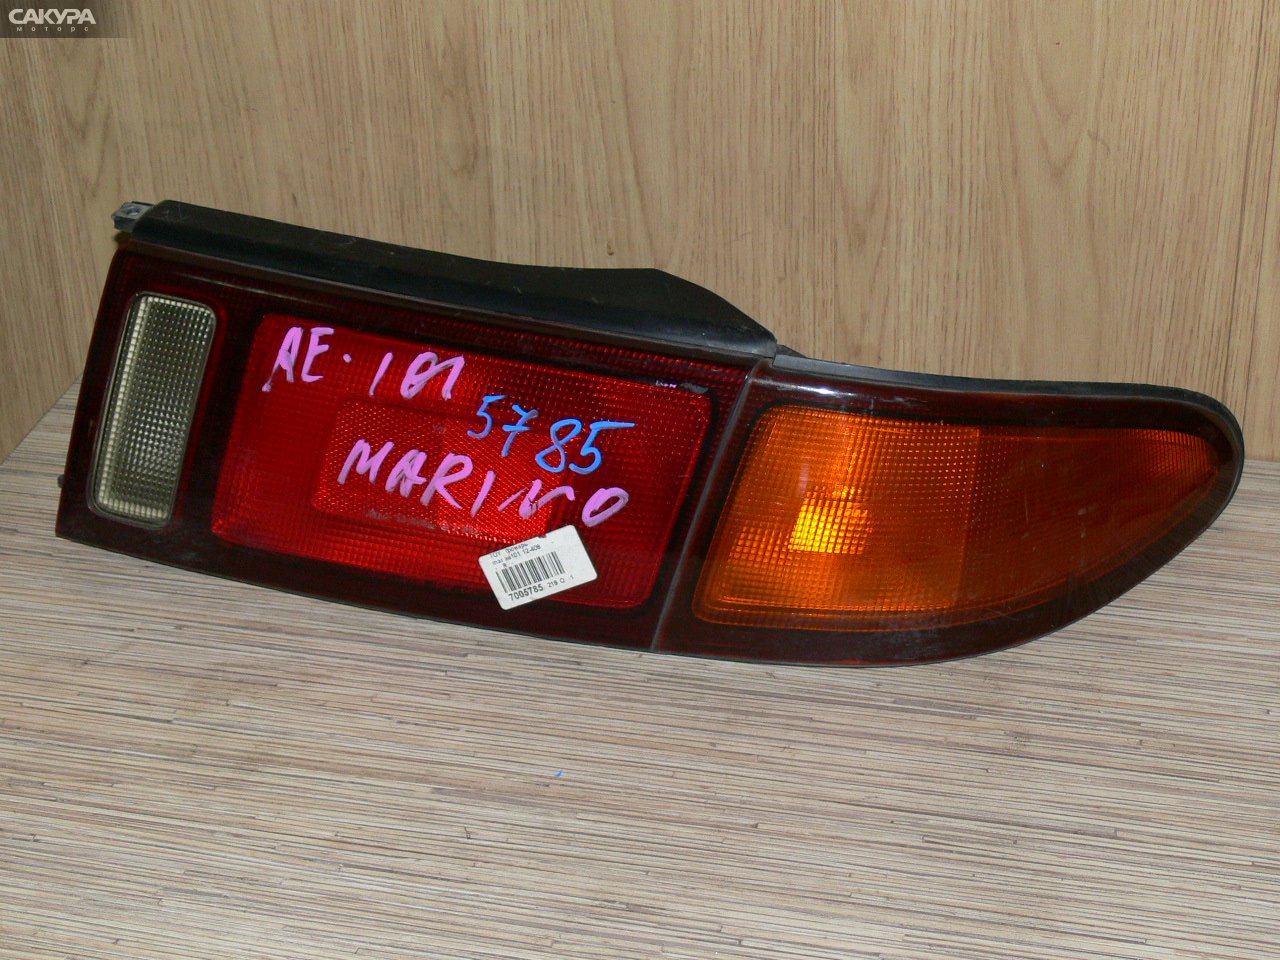 Фонарь стоп-сигнала правый Toyota Sprinter Marino AE101 12-408: купить в Сакура Иркутск.